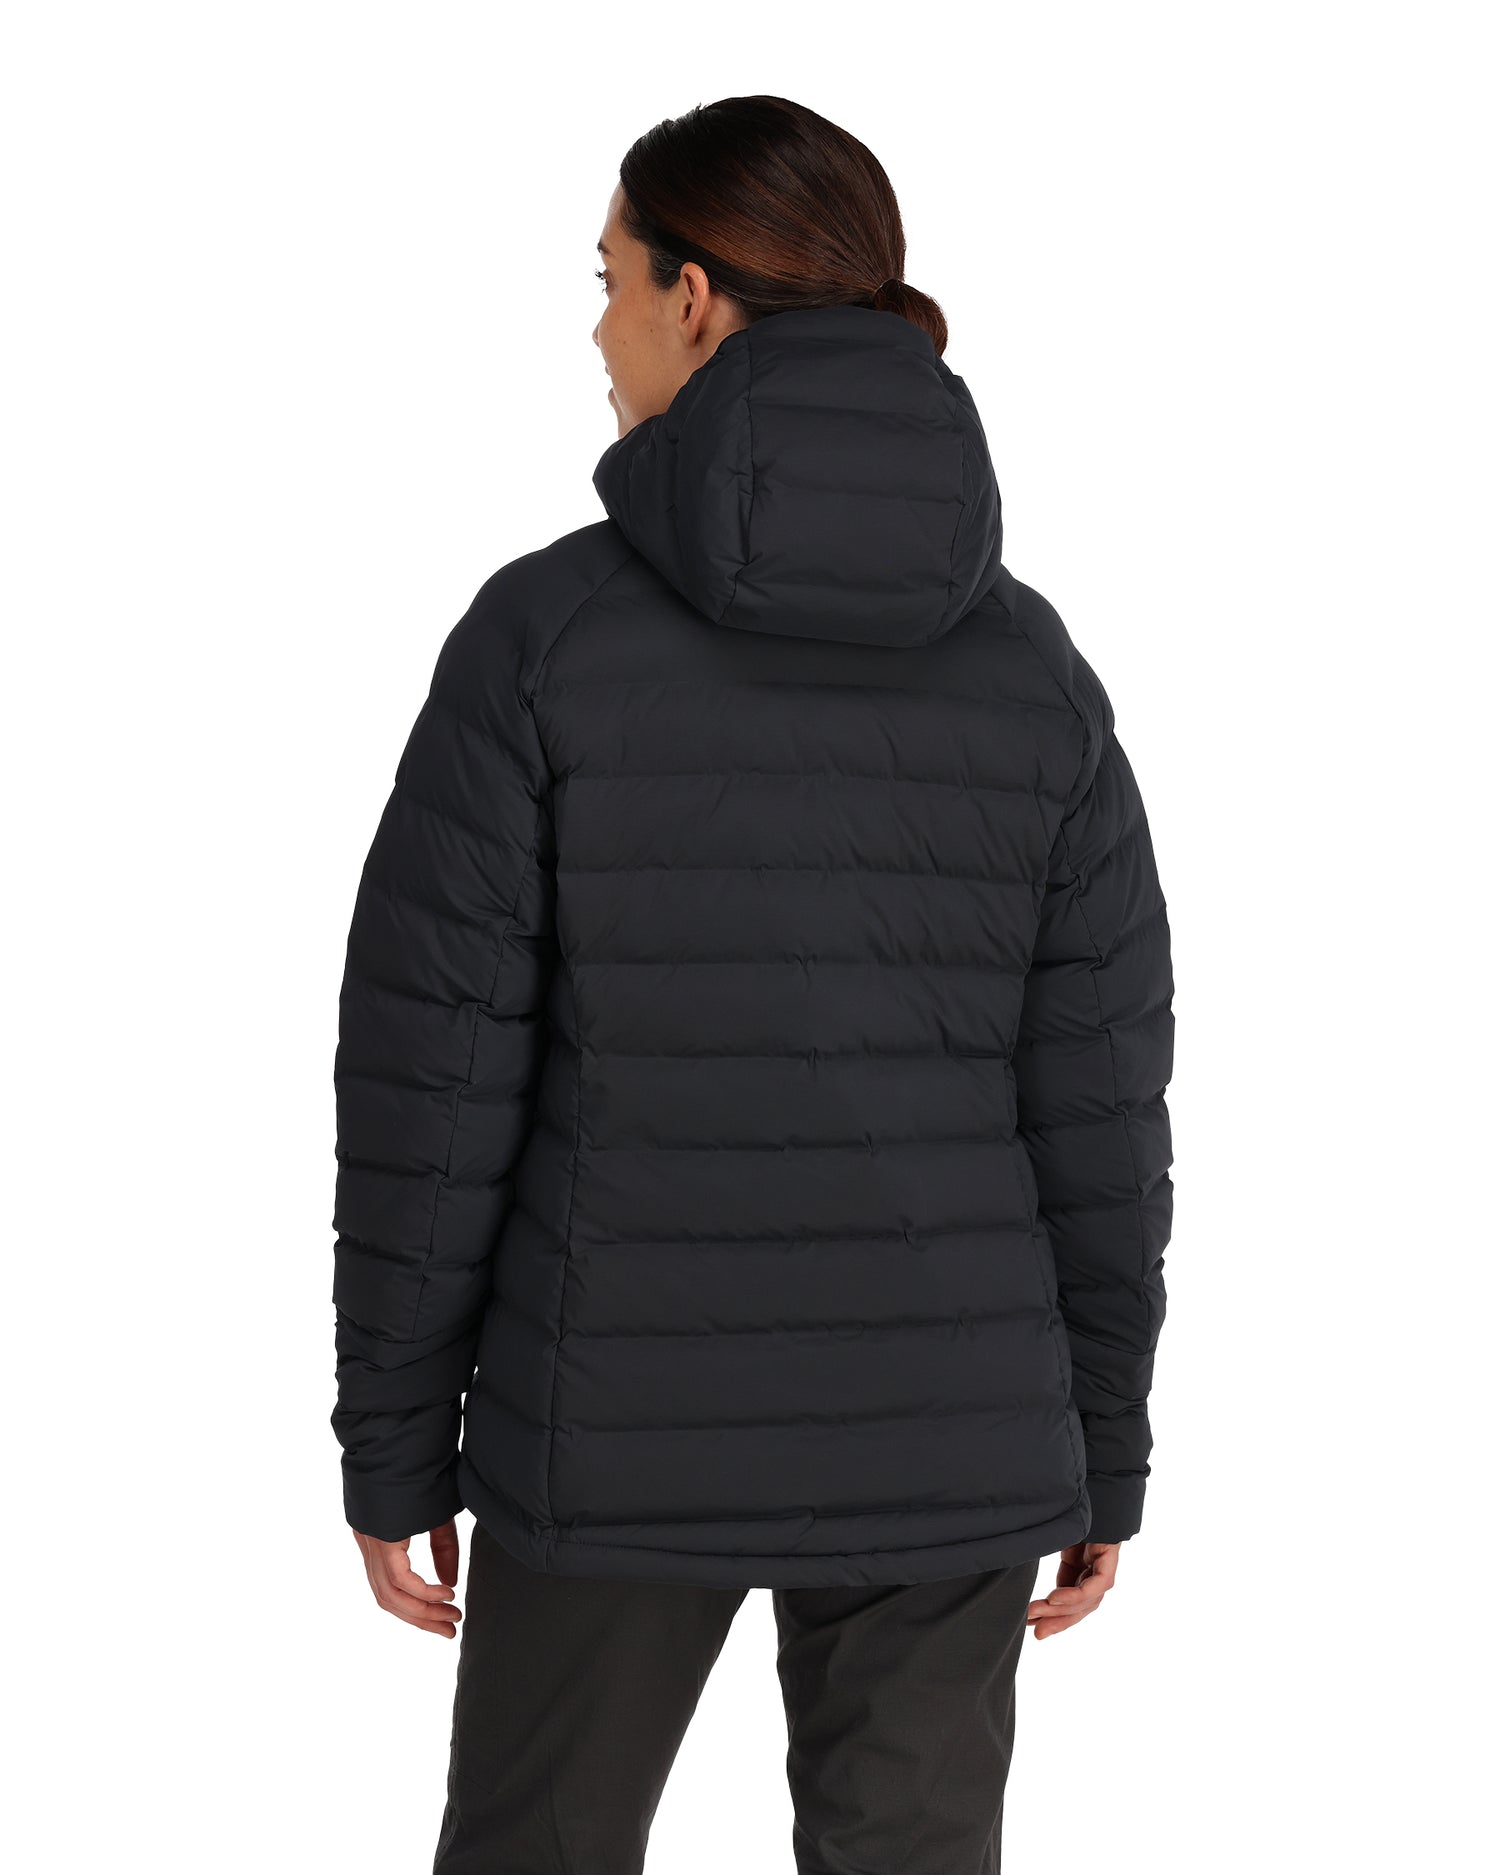 13555-624-exstream-hooded-jacket-mannequin